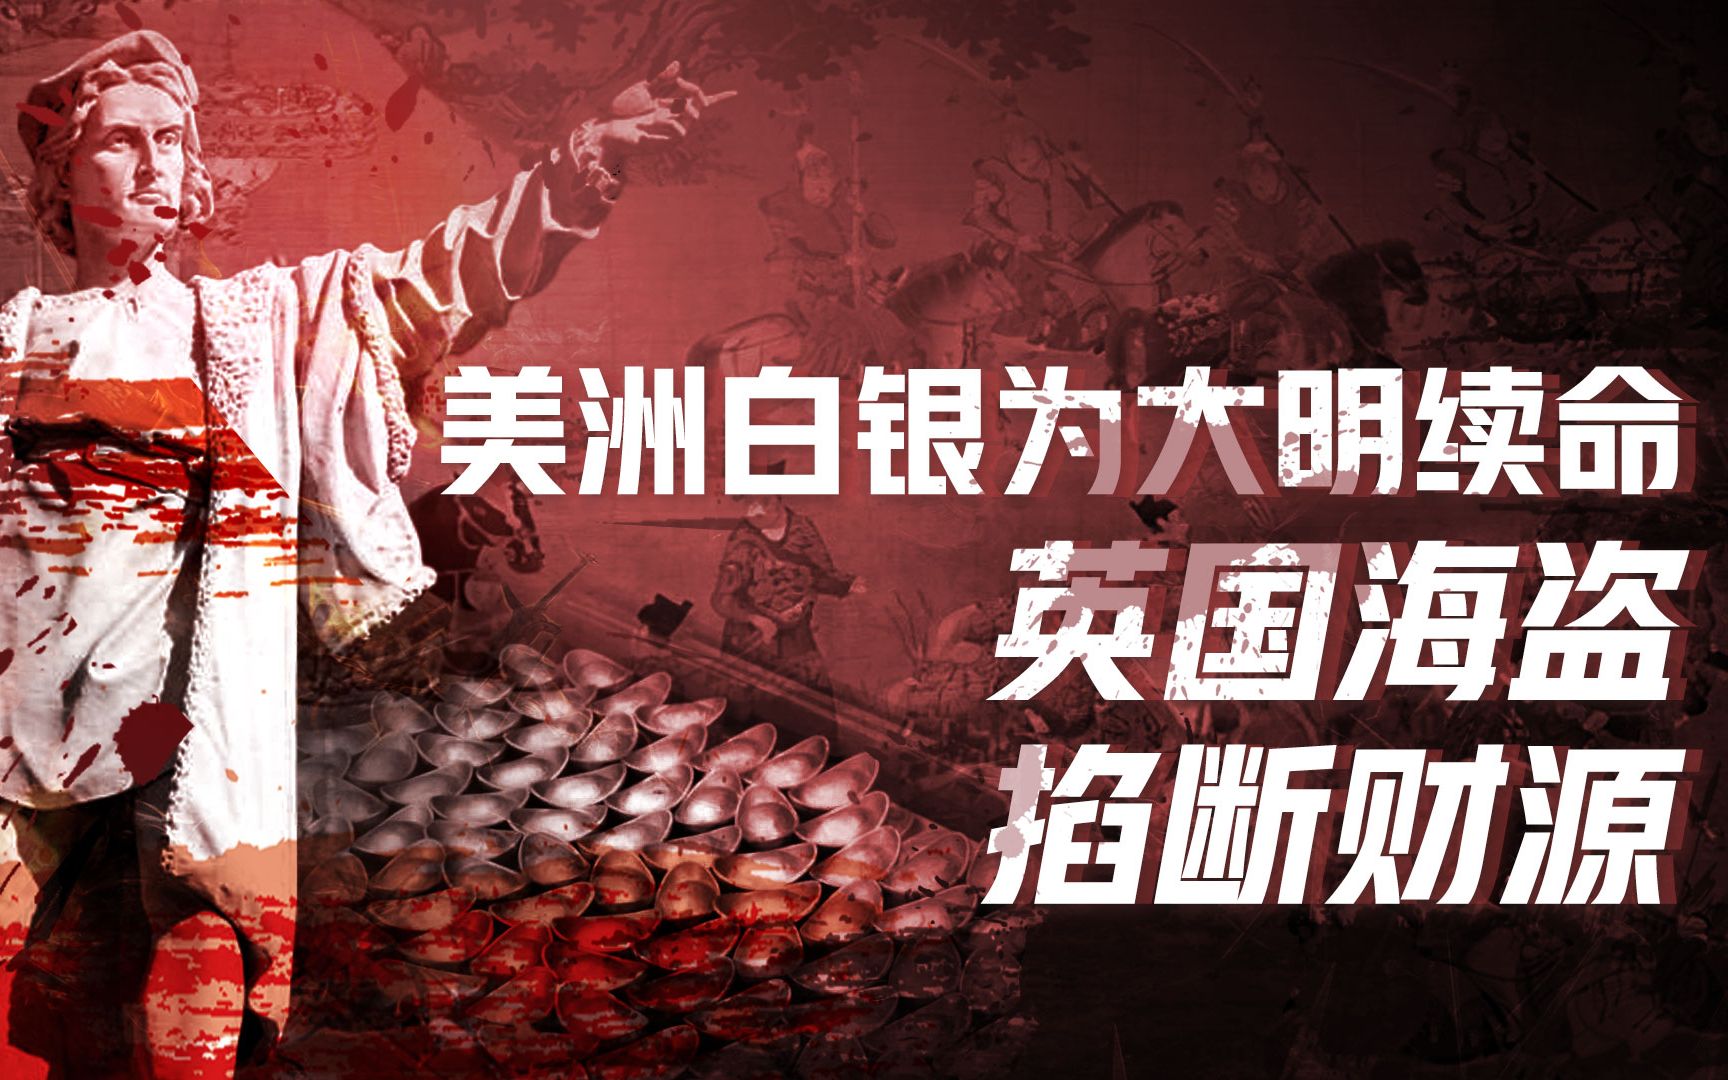 【卢克文工作室】魏忠贤与全球化（一）：哥伦布冒险送银子，中国奢侈品全球流行